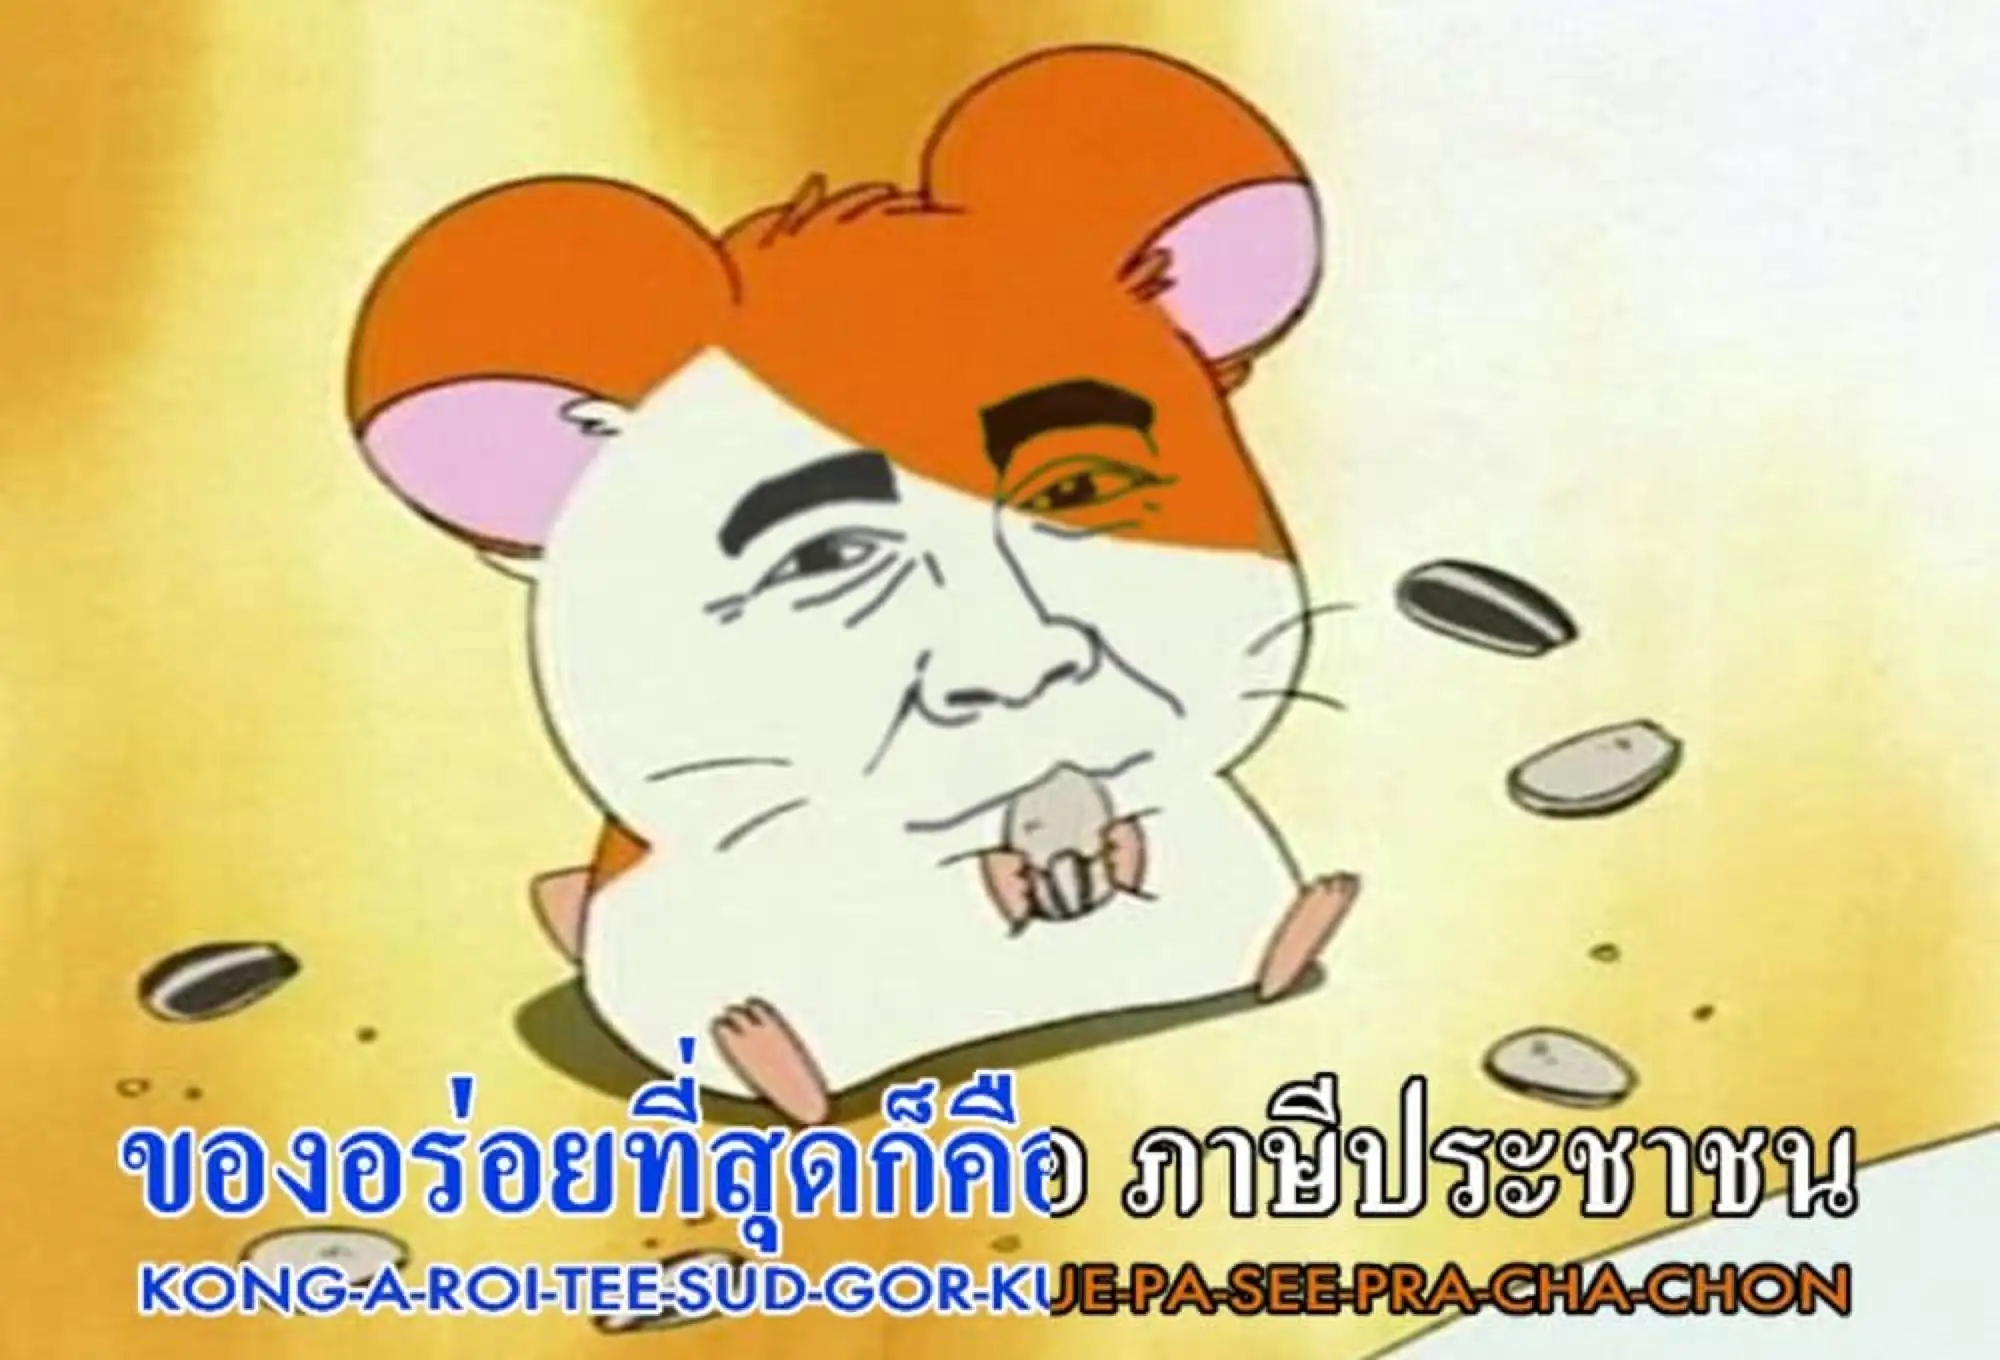 泰國反政府示威改編哈姆太郎主題曲諷刺政府官員（圖片來源：Twitter）